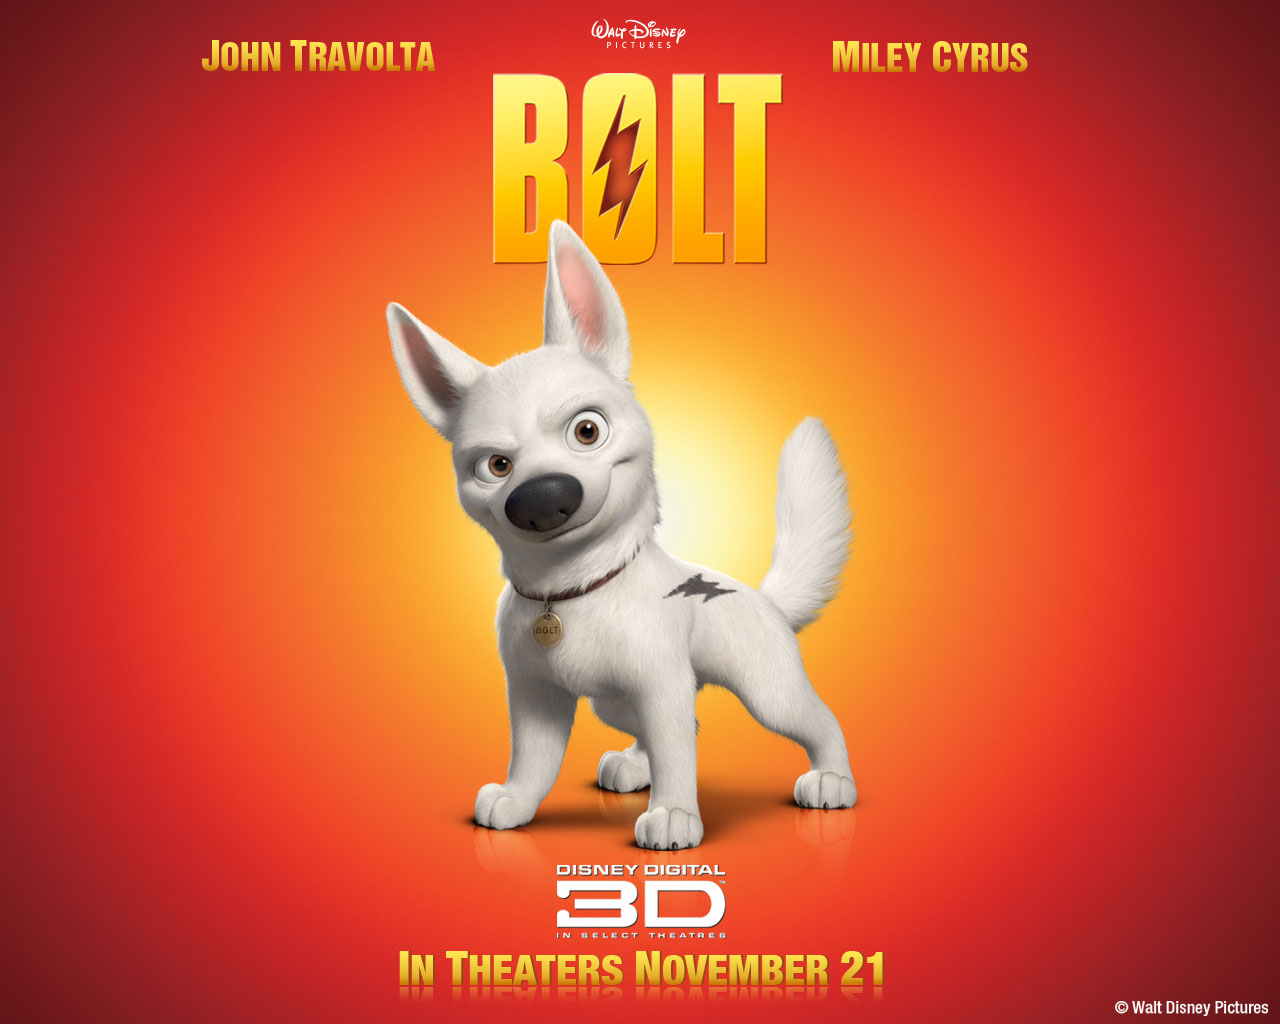 "Bolt" desktop wallpaper number 1 (1280 x 1024 pixels)